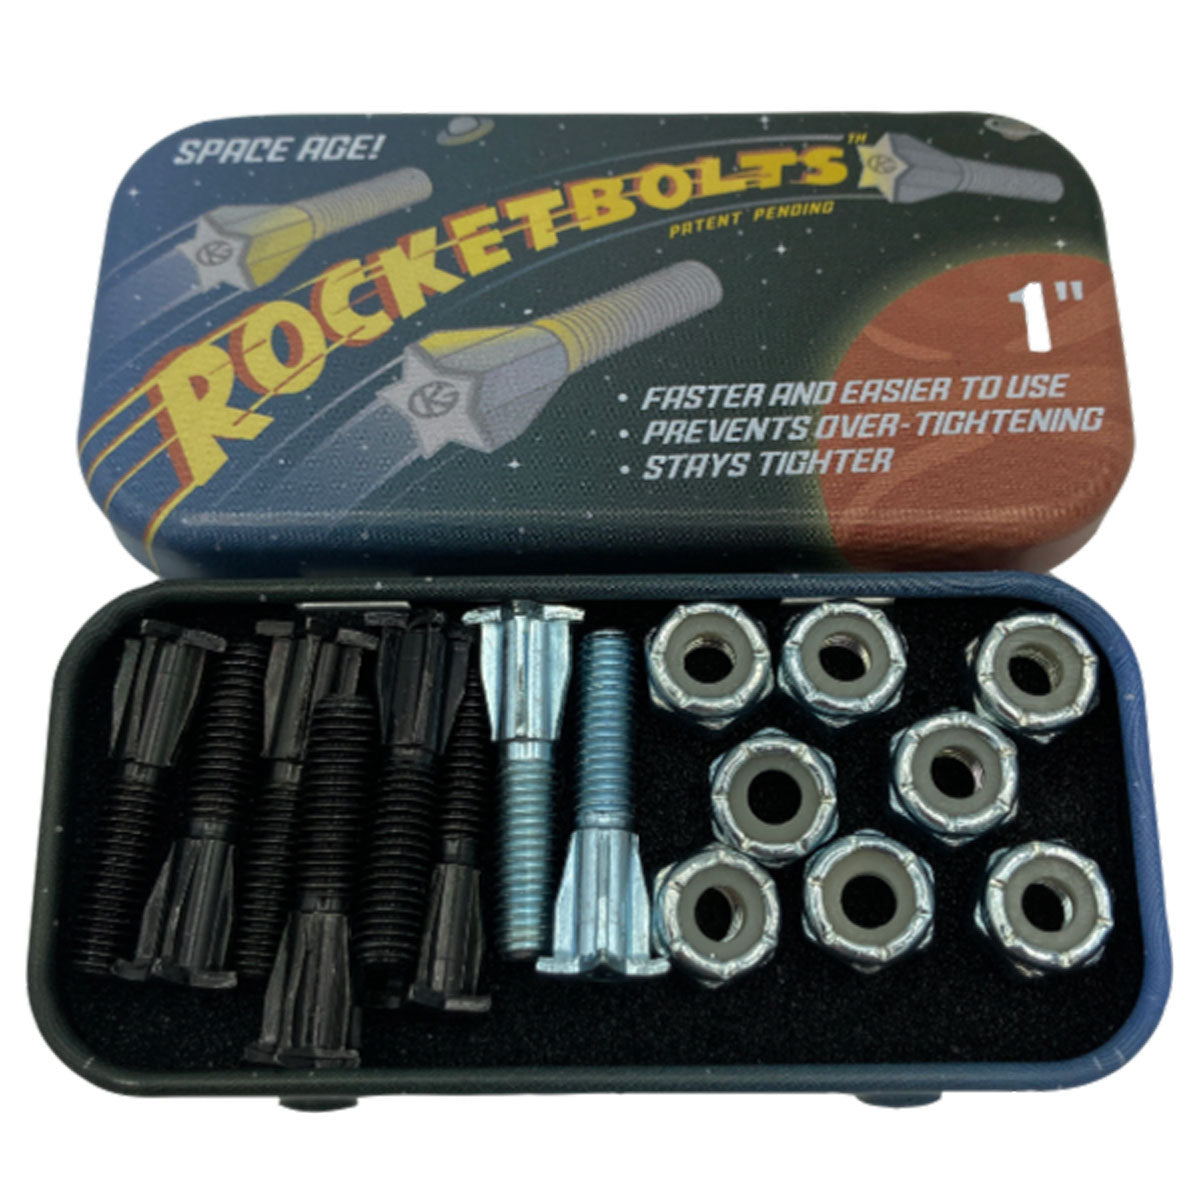 Grind King Rocketbolts Hardware image 2